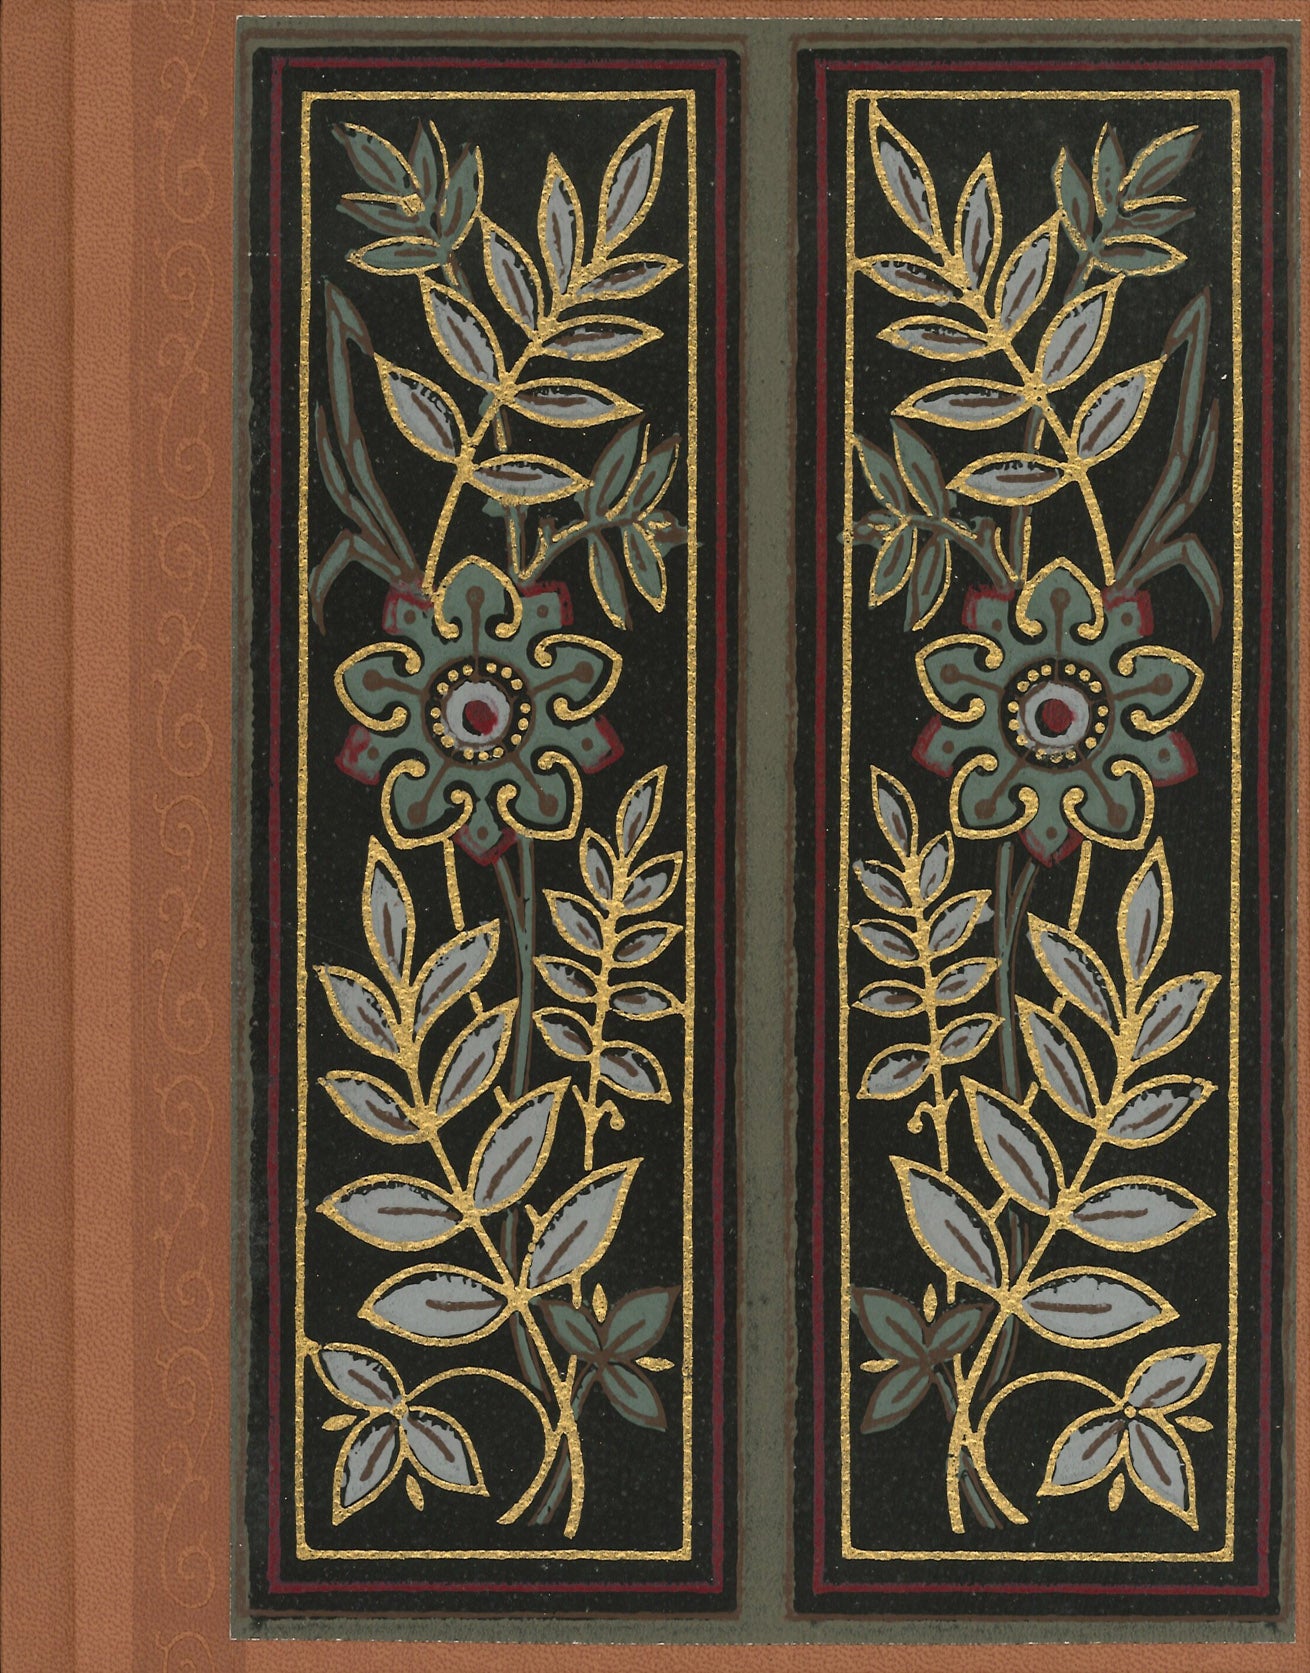 Floral Tile Antique Wallpaper Journal - 7" x 9"